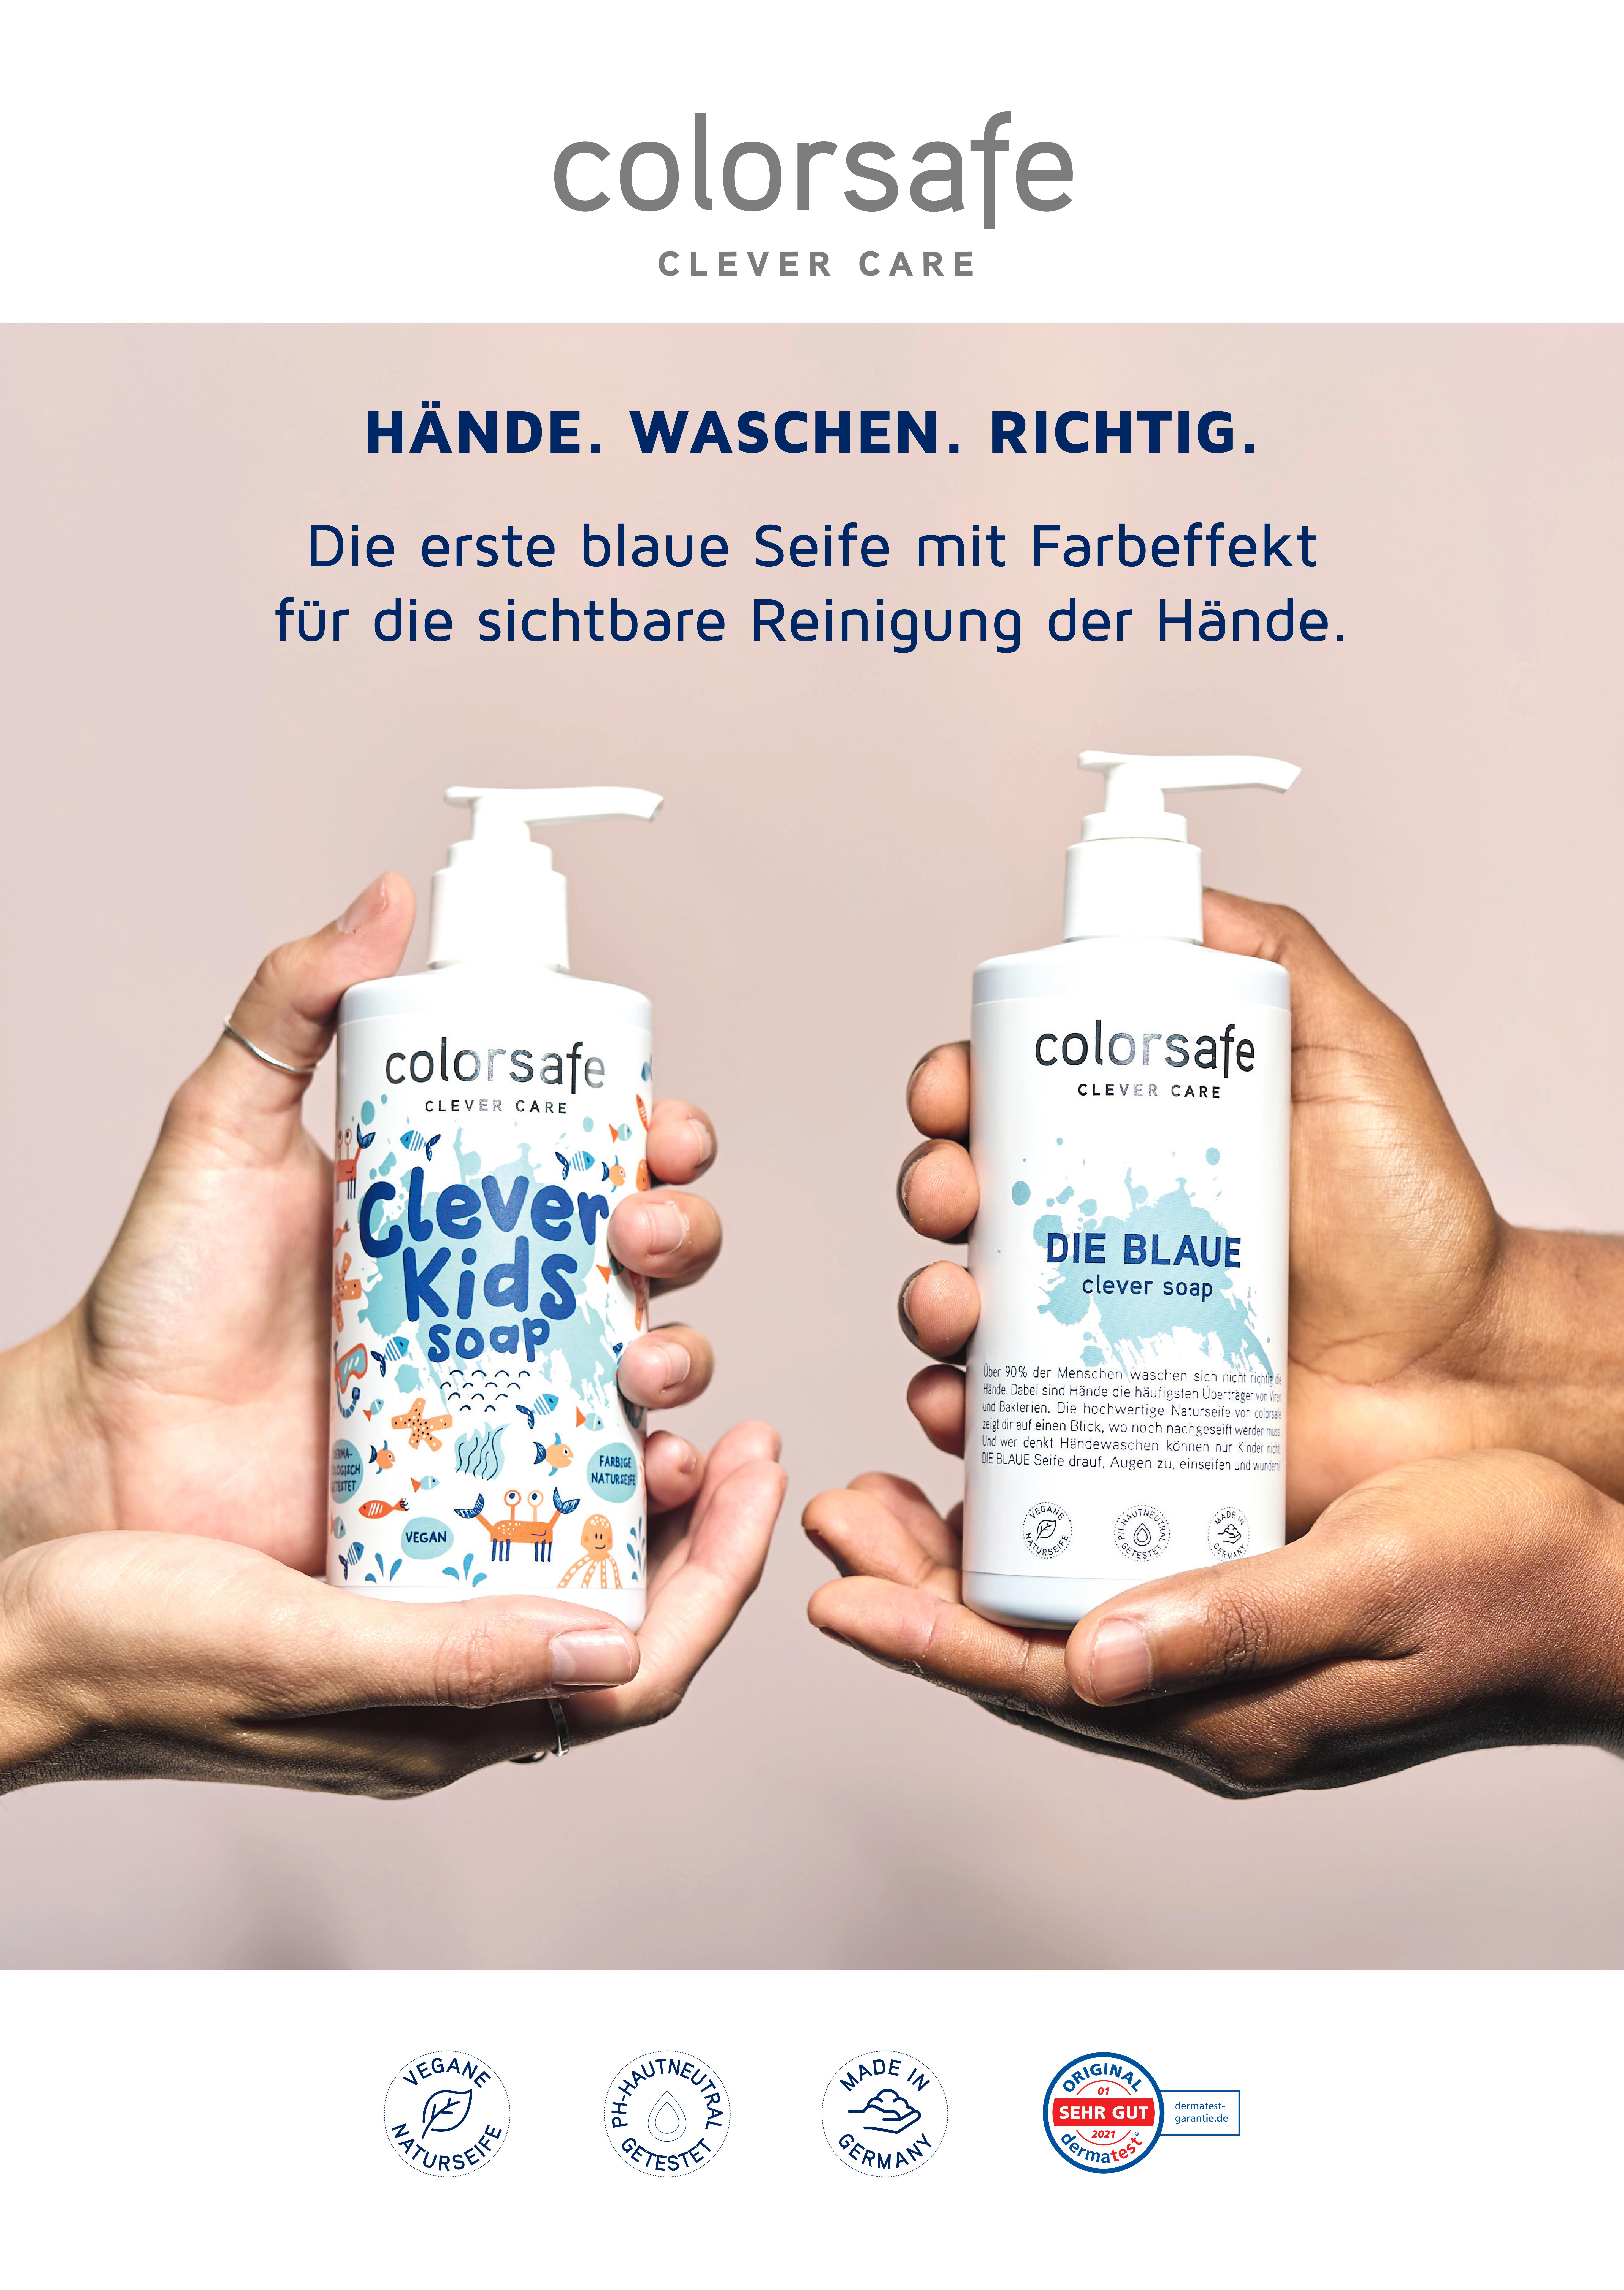 DIE BLAUE clevere Seife: Jetzt wieder verfügbar!Hände. Waschen. Richtig.